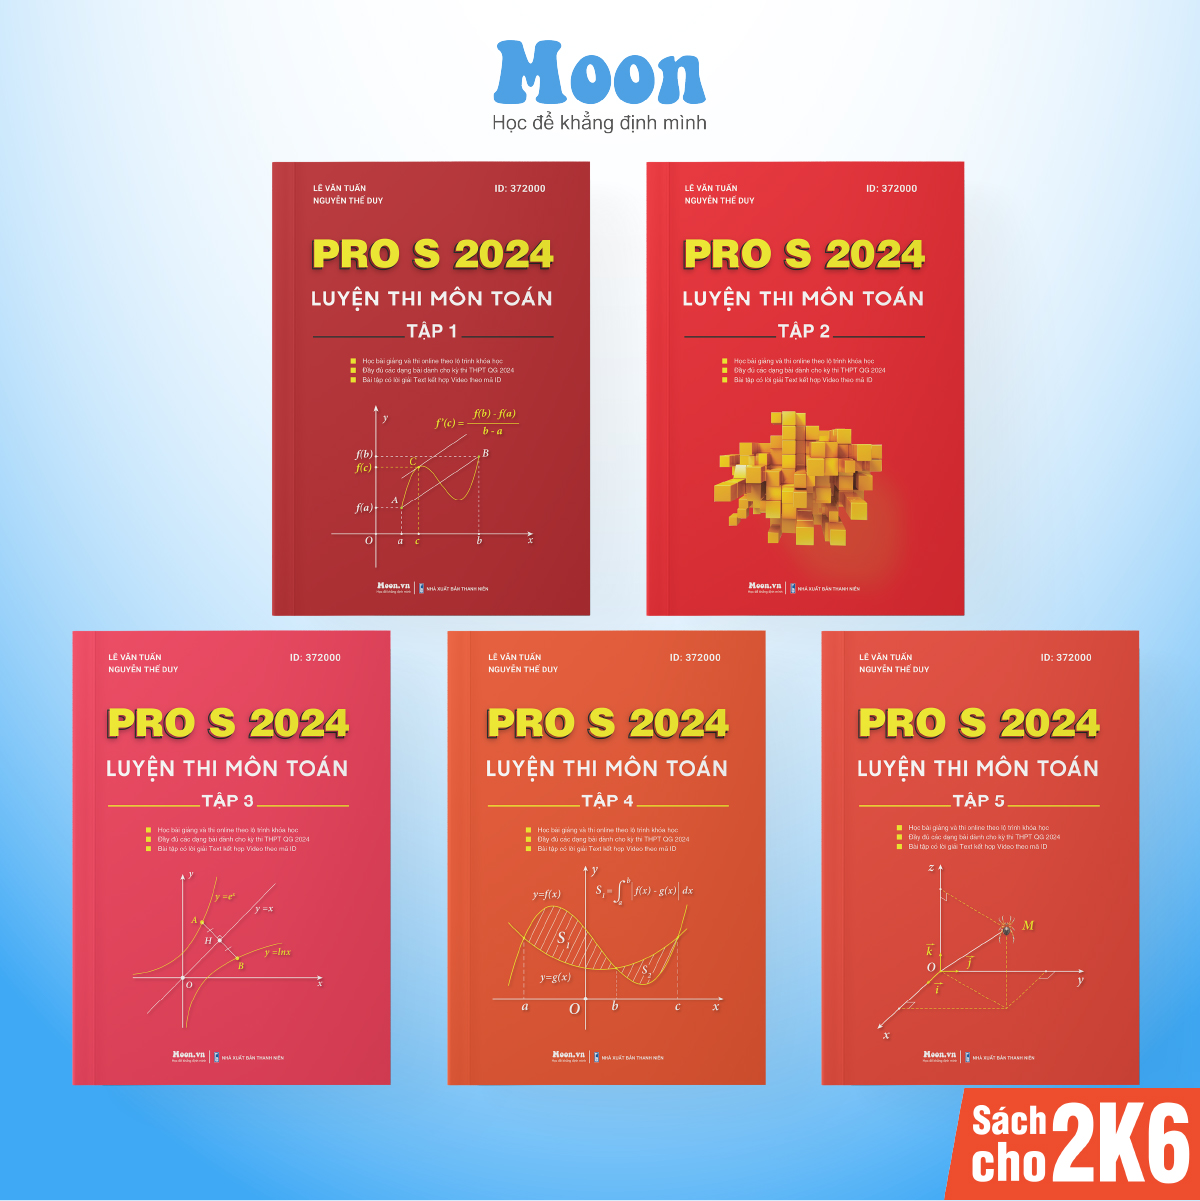 Bộ Sách ID MoonBook Luyện Thi Môn Toán PRO S Kèm Khóa Học Cả Năm 2023 - 2024